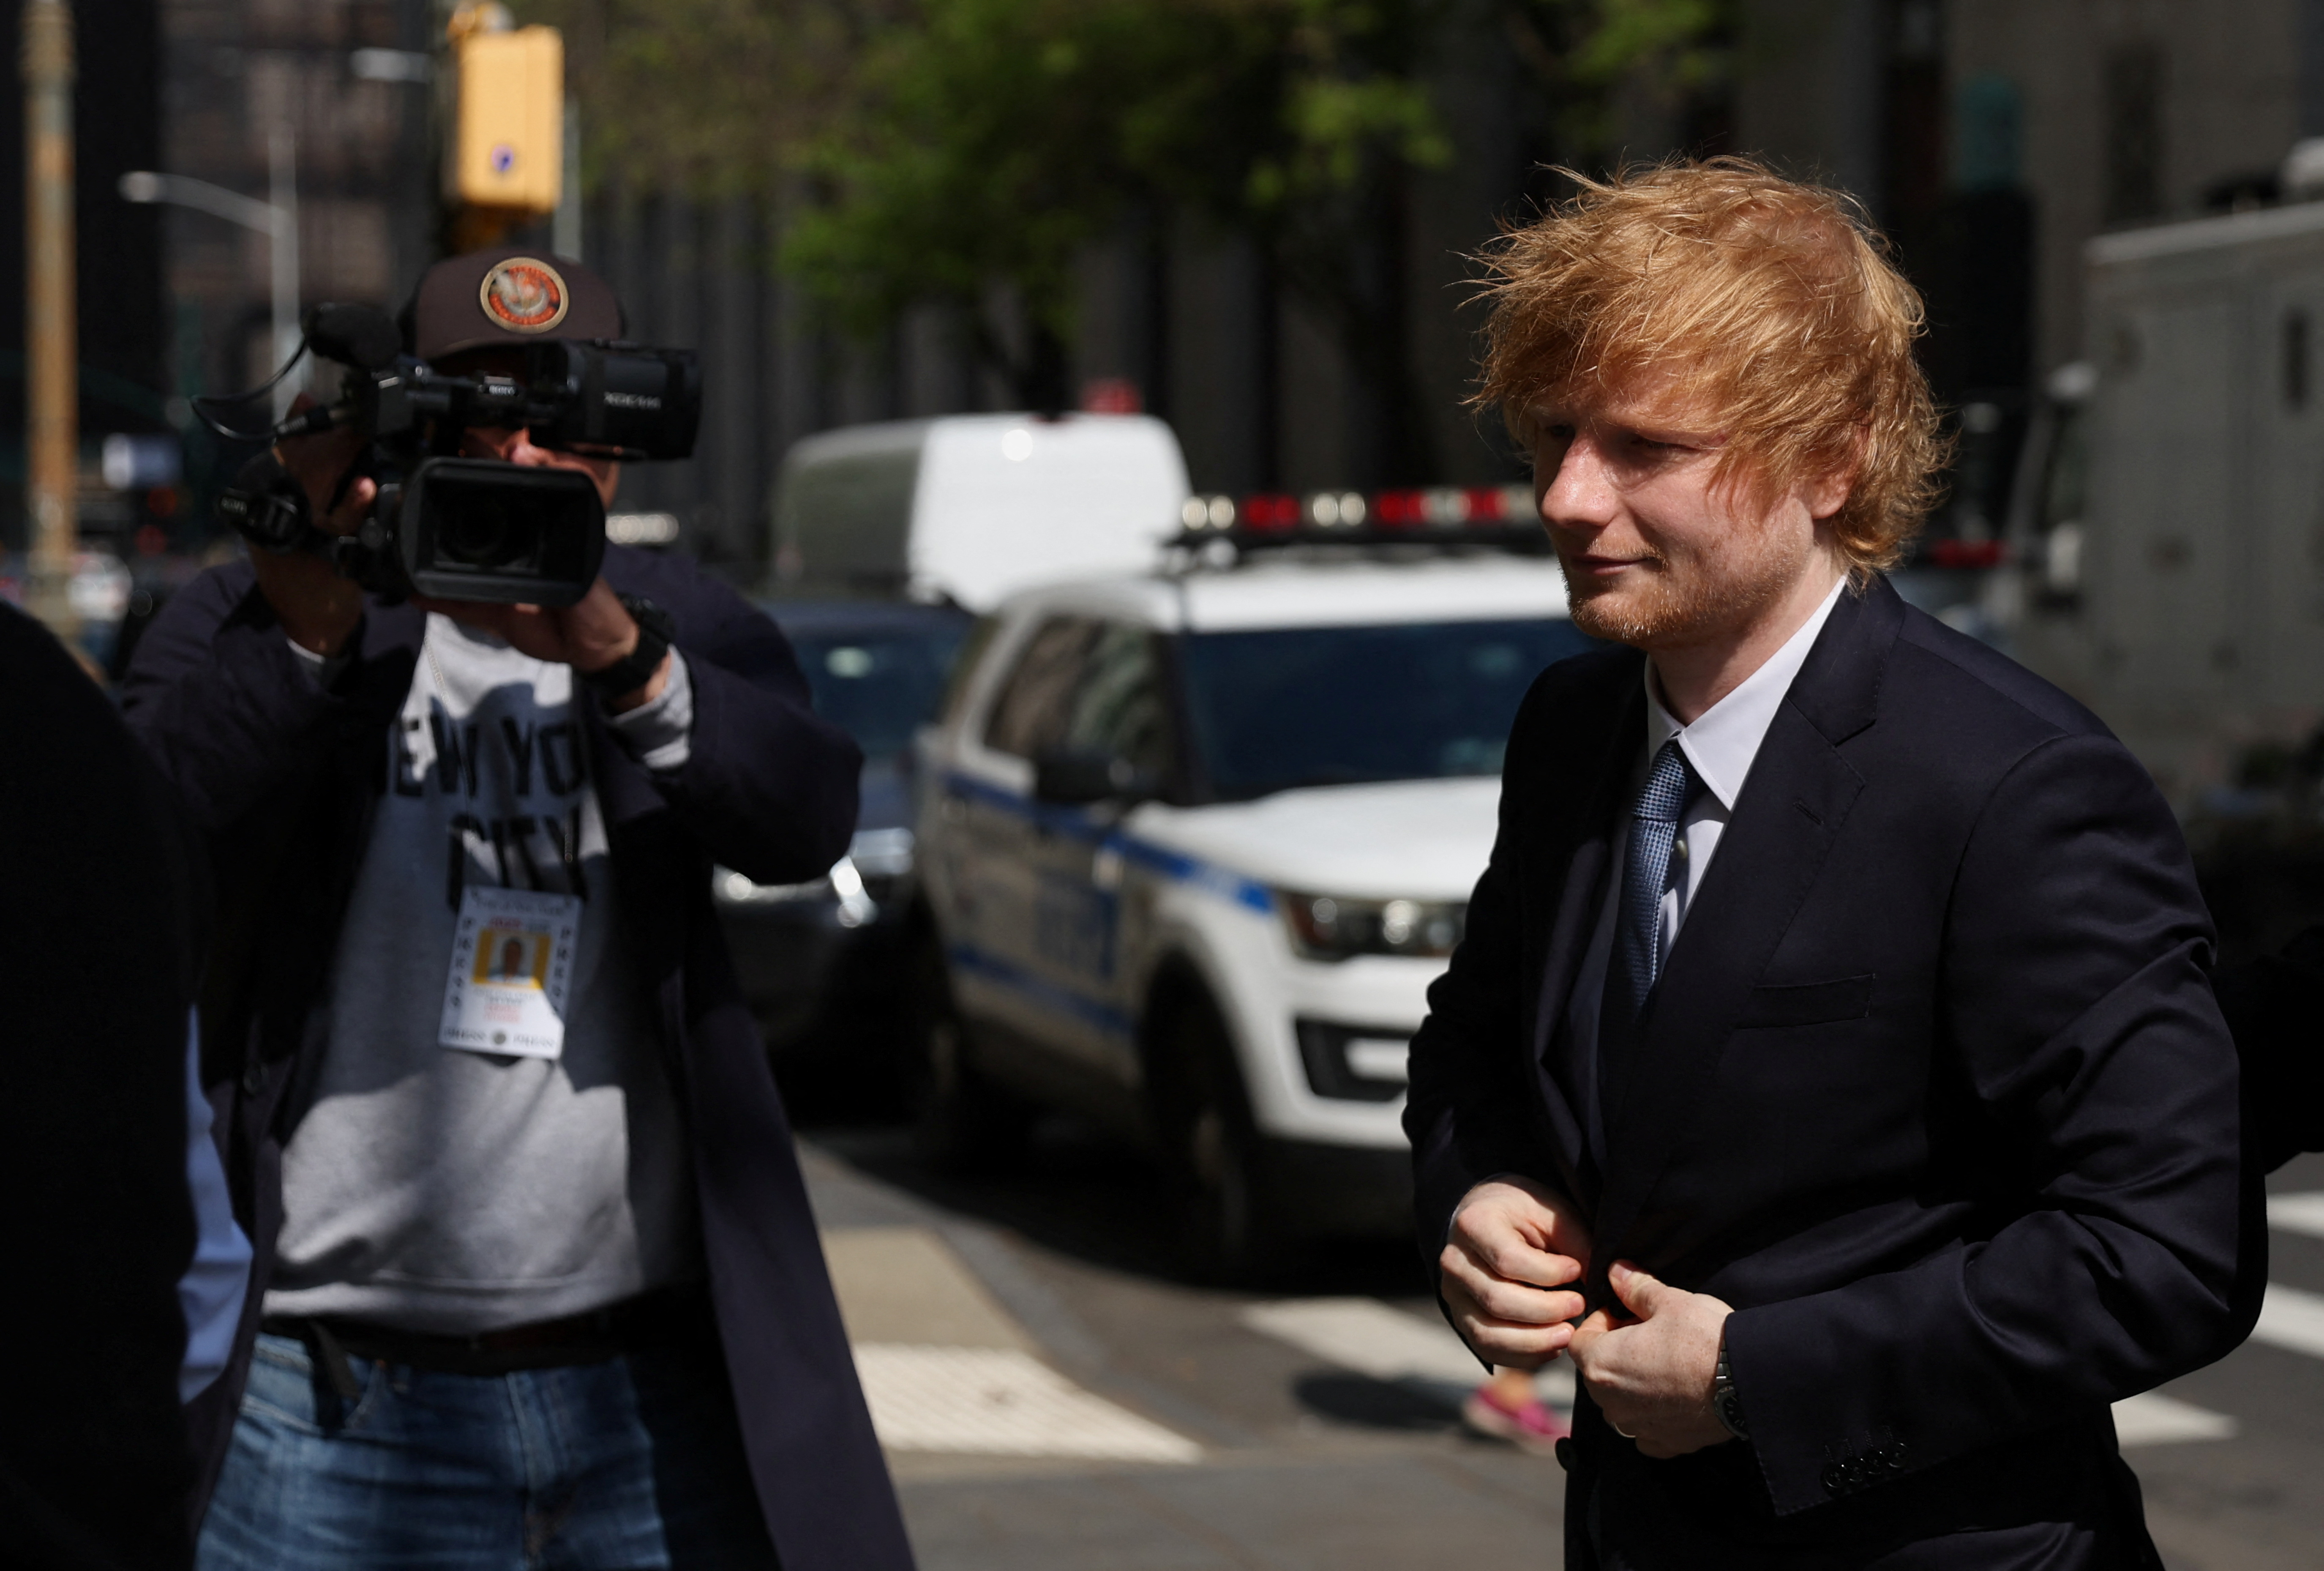 Comenzó el juicio contra Ed Sheeran: lo acusan de plagiar a Marvin Gaye en su canción “Thinking Out Loud”